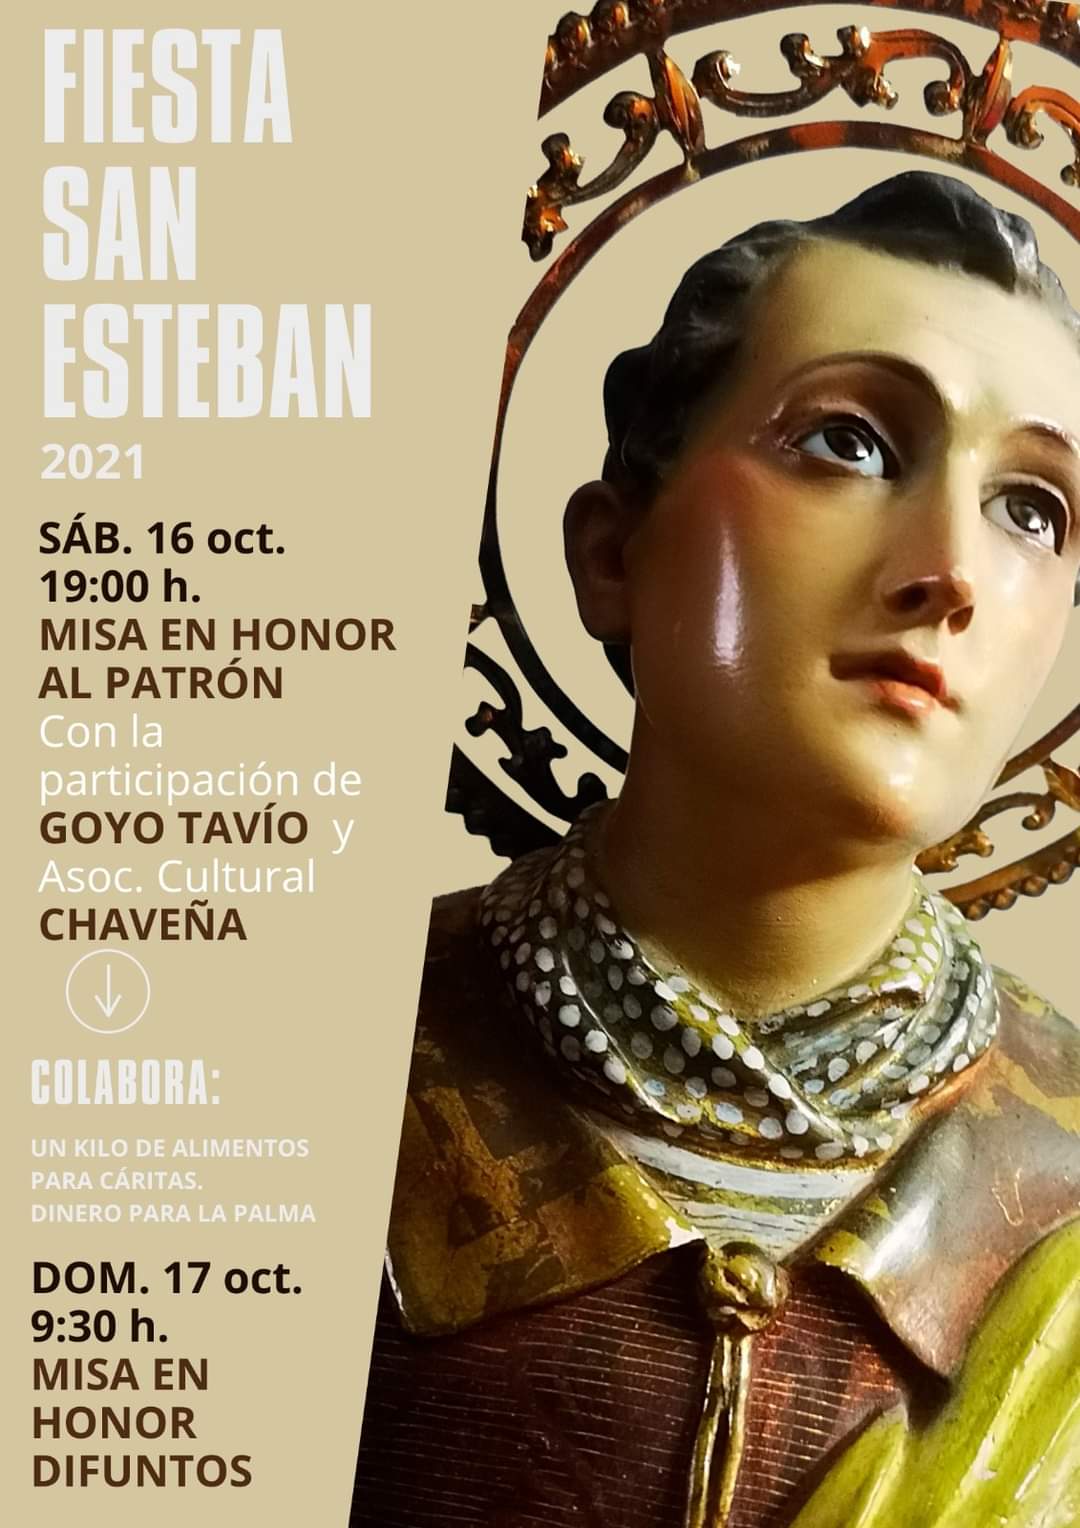 Fiestas en honor a San Esteban